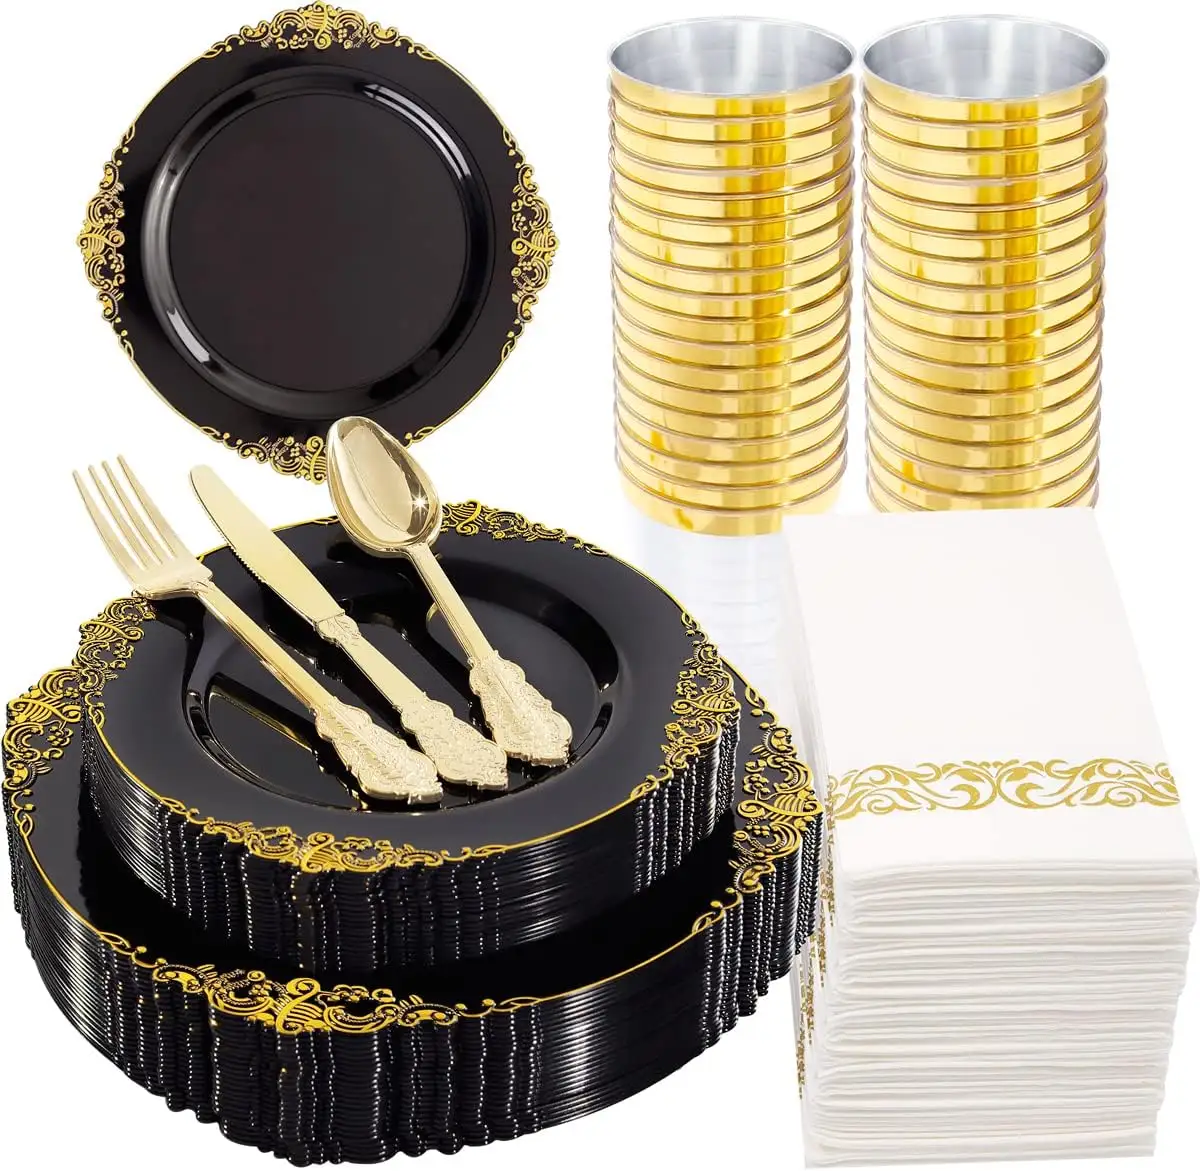 Placa plástica preta e dourada para jantar, prato descartável com 50 pratos, 25 facas, 25 garfos, 25 colheres, 25 guardanapos, 175 unidades